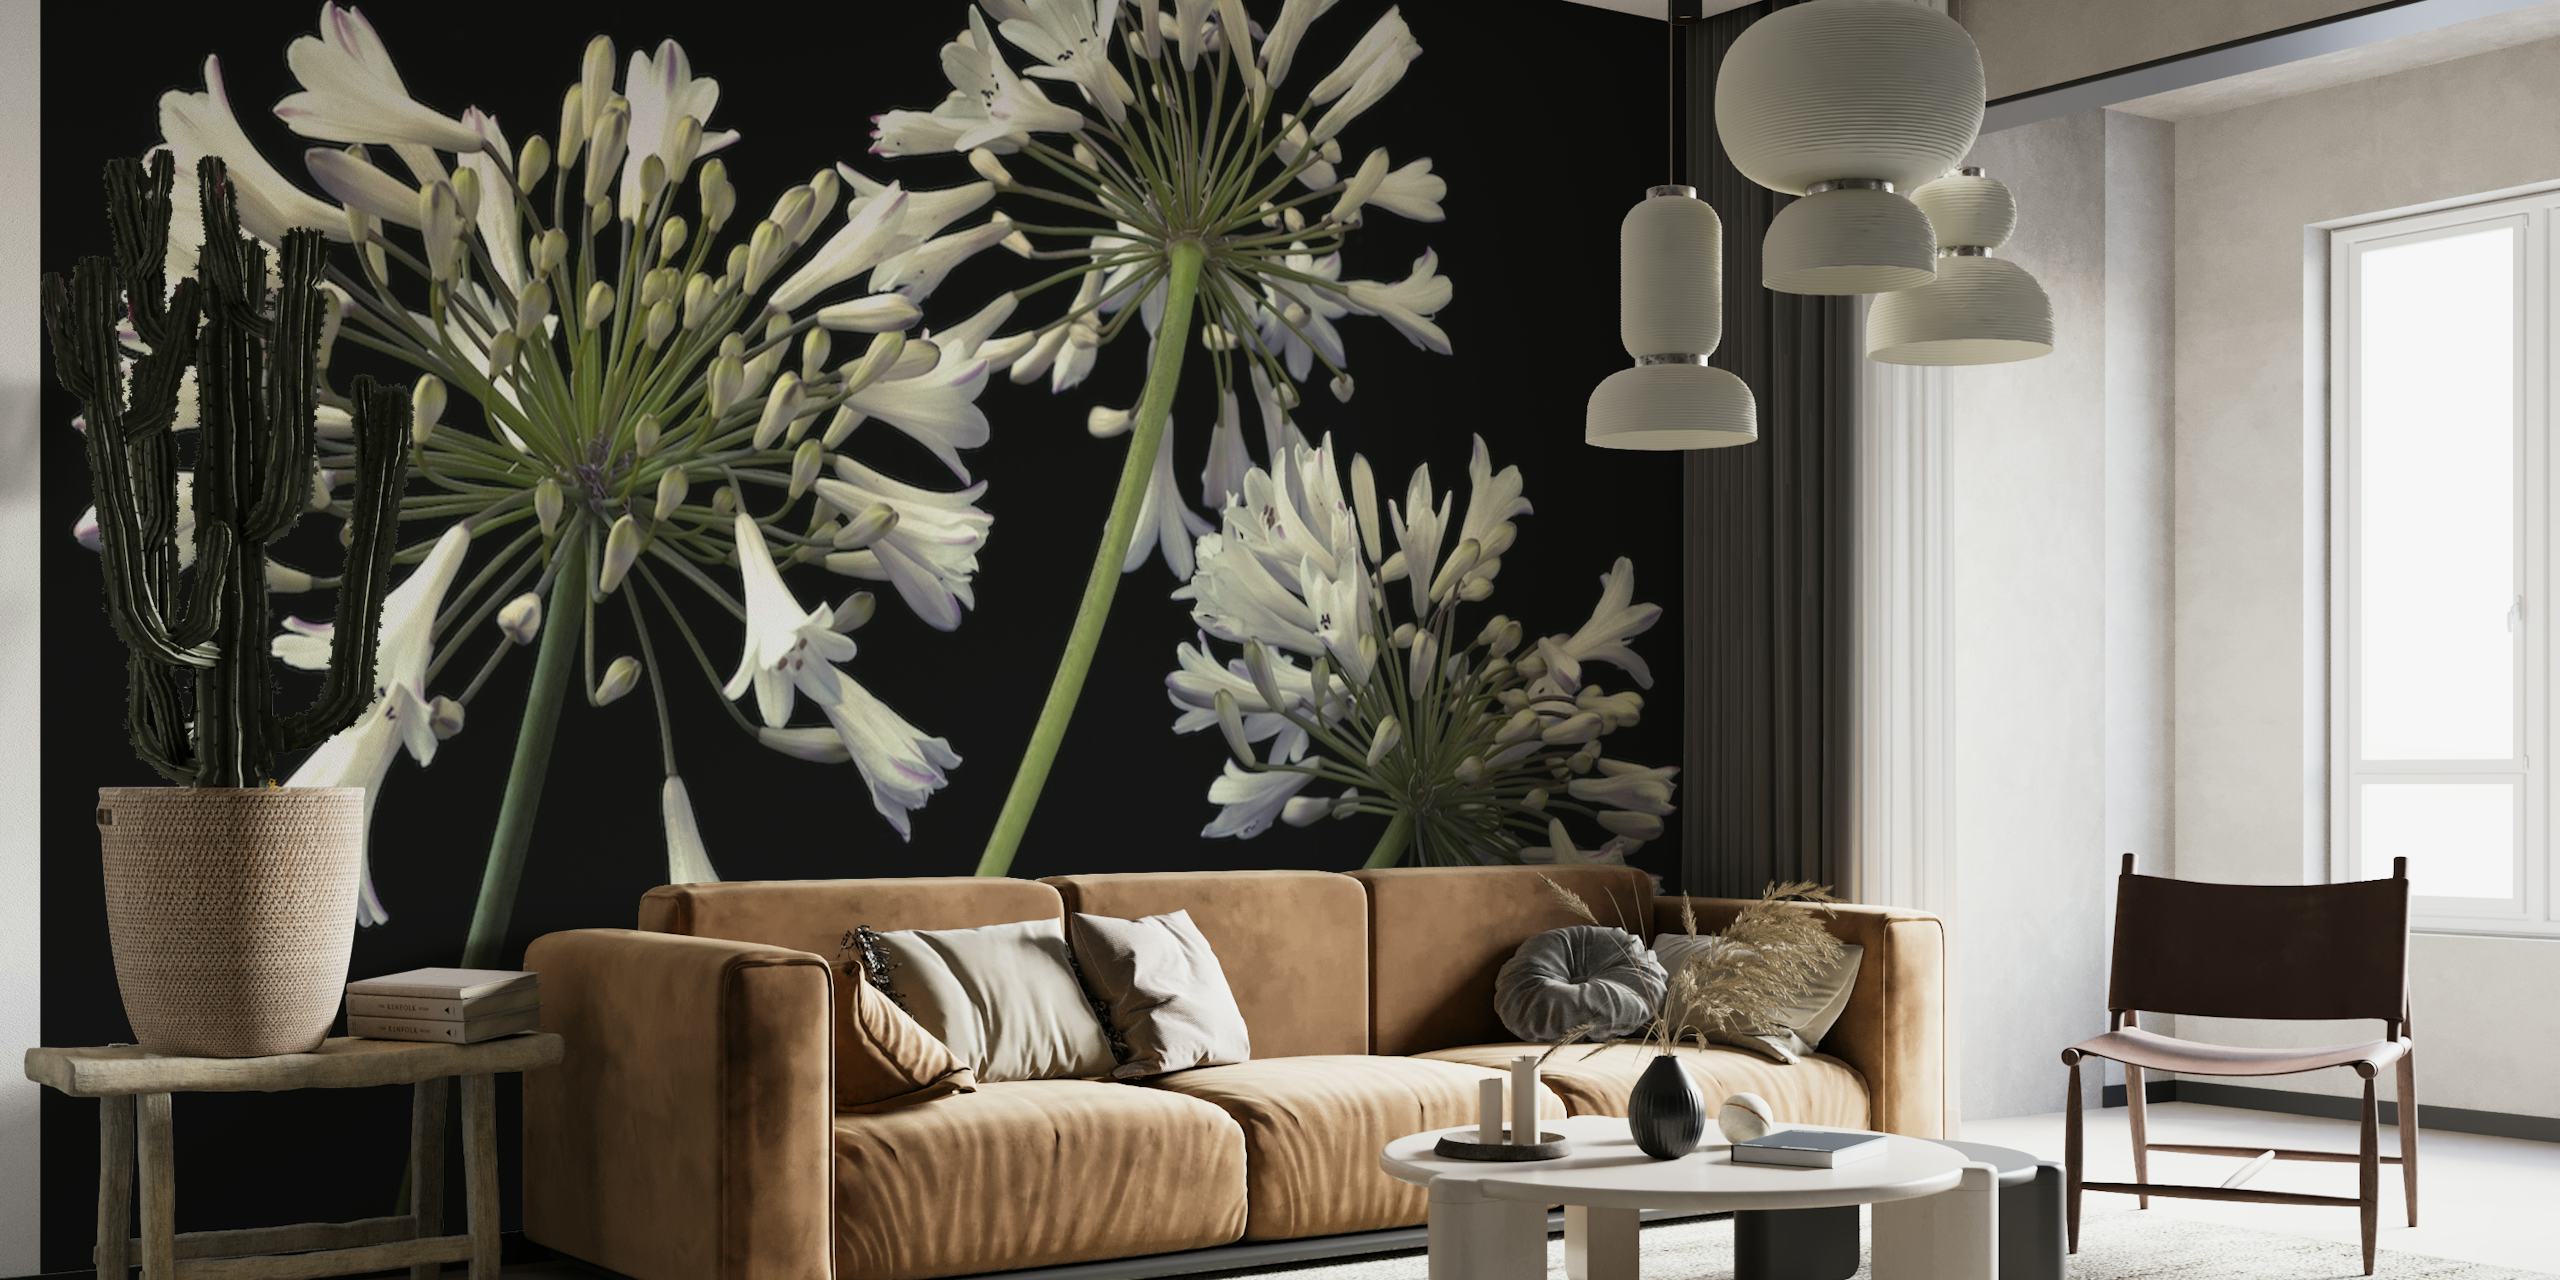 Afrikansk lilje-vægmaleri, der viser hvide Agapanthus-blomster på en sort baggrund